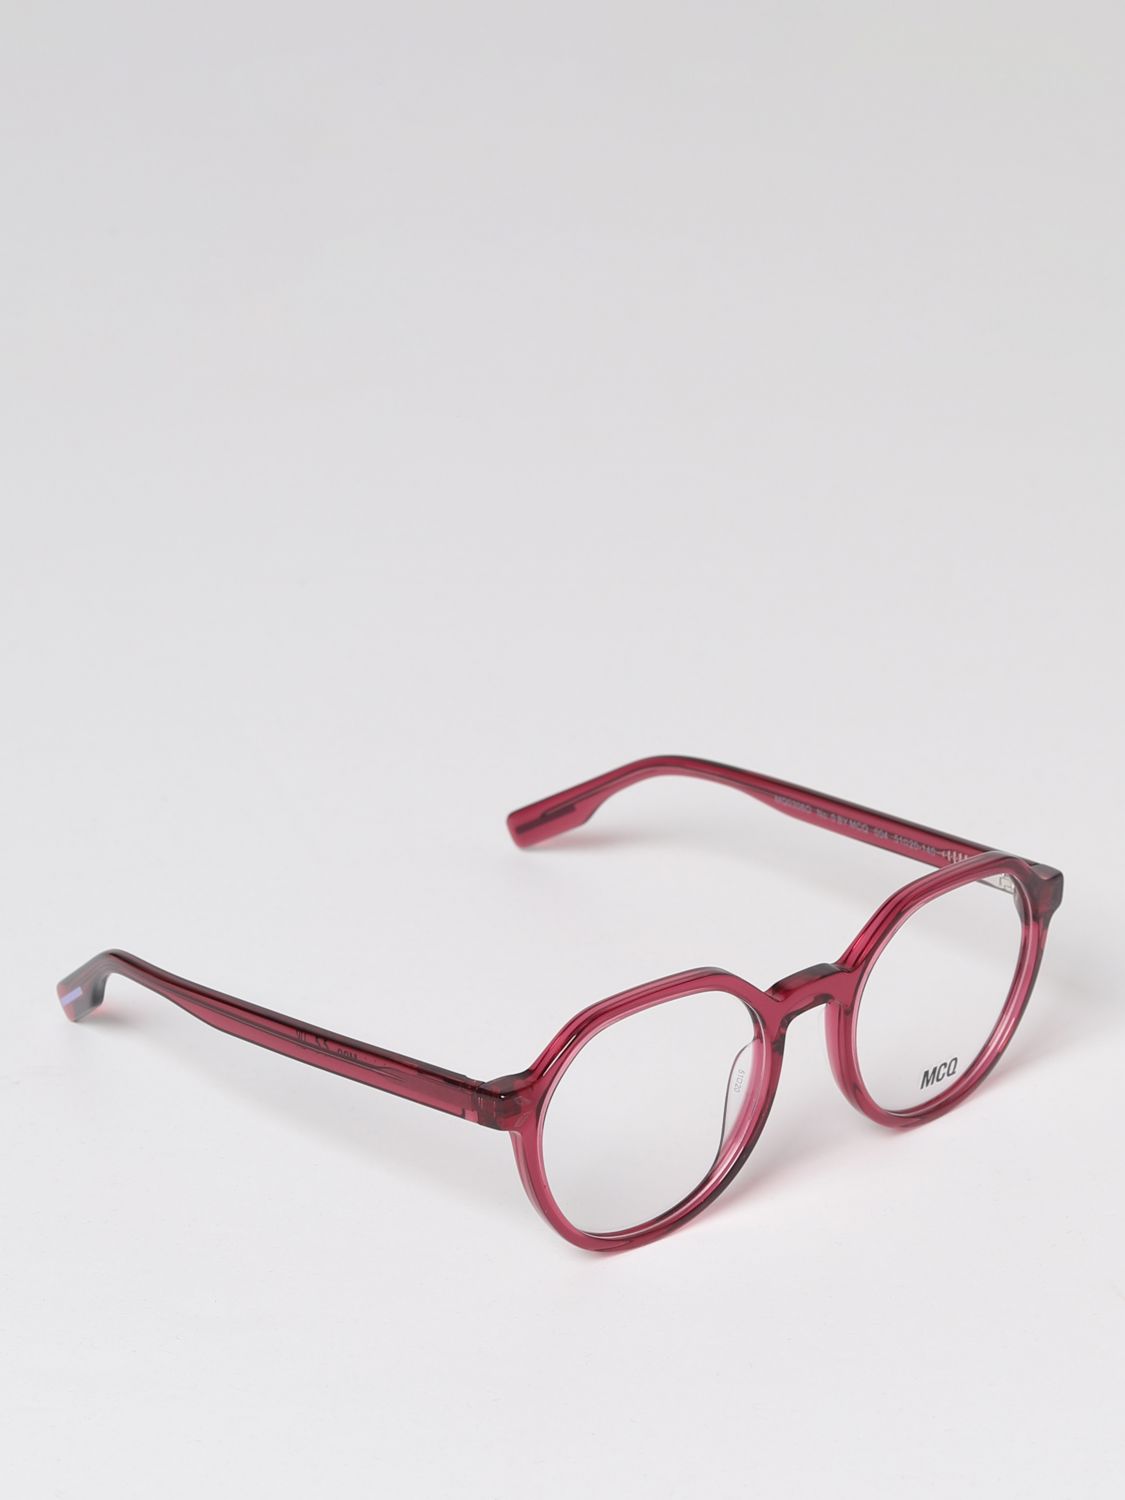 Optical frames Mcq: Mcq optical frames for woman cyclamen 1